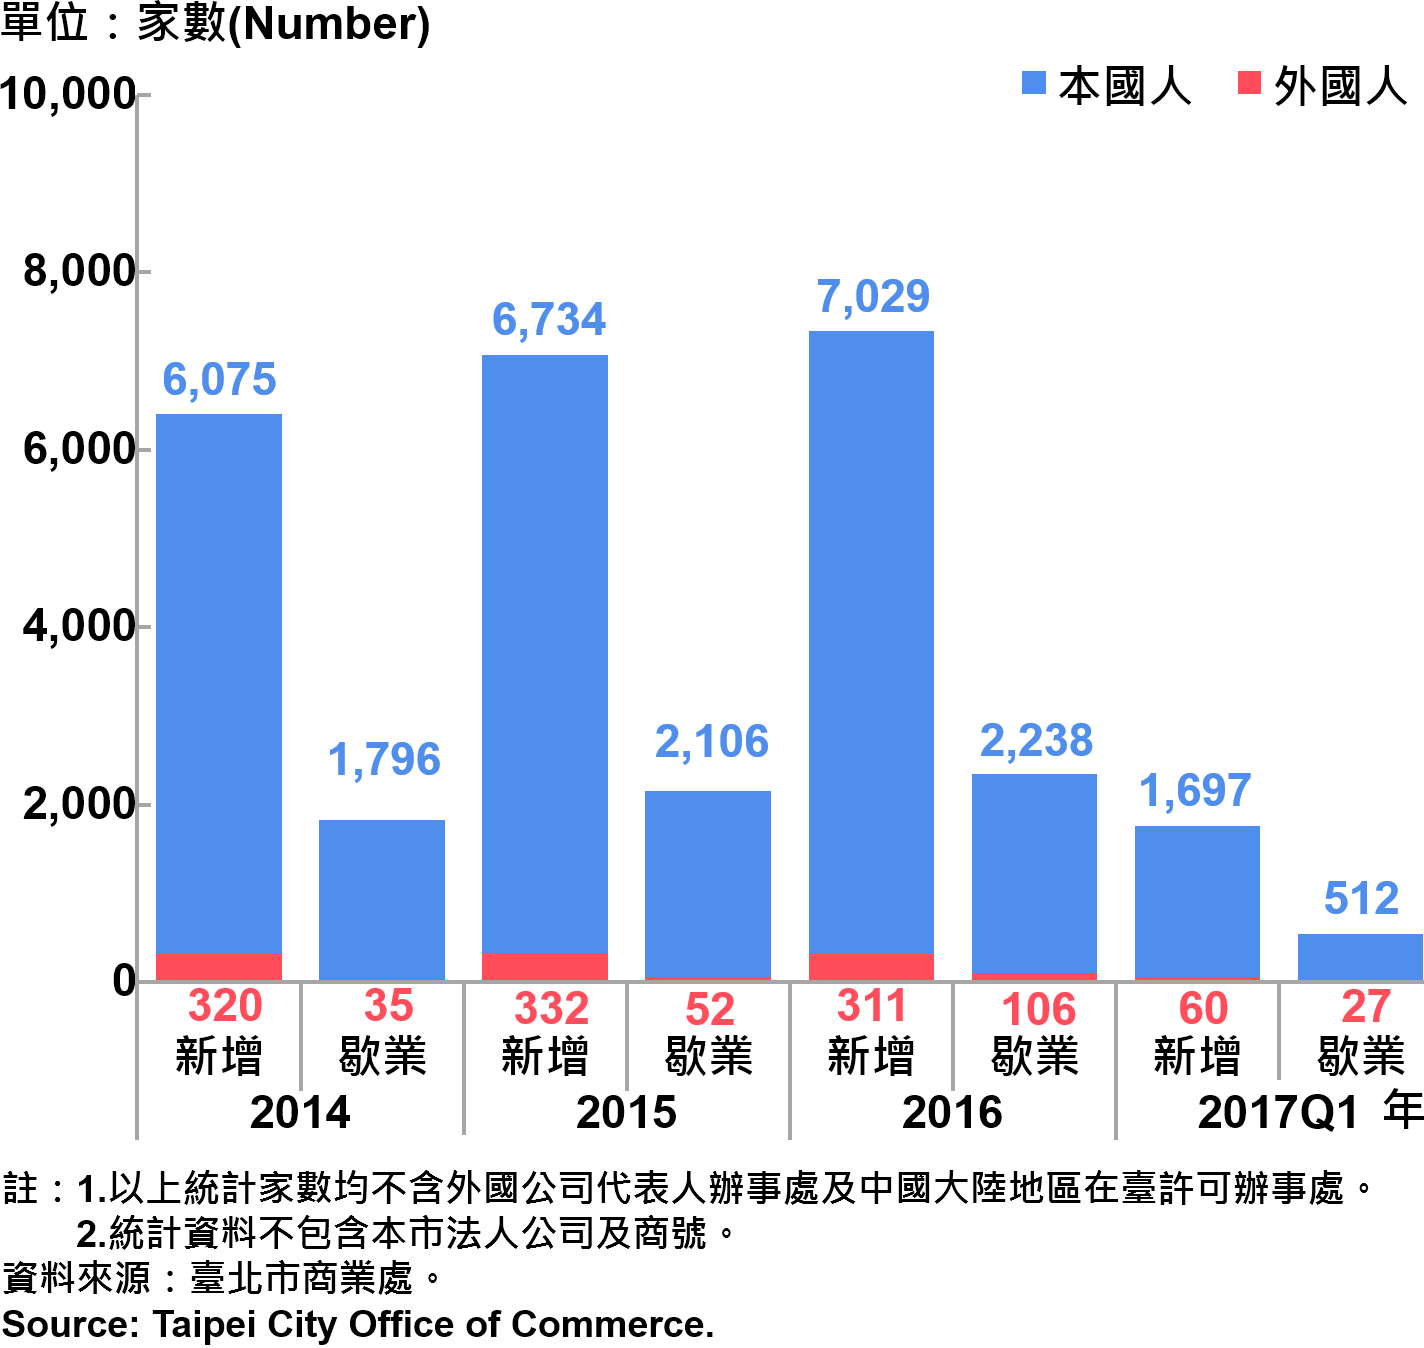 圖21、臺北市公司青創負責人為本國人與外國人分布情形—依新增及歇業家數—2017Q1 Responsible Person of Newly Registered Companies In Taipei by Nationality - Number of Incorporation/Termination —2017Q1